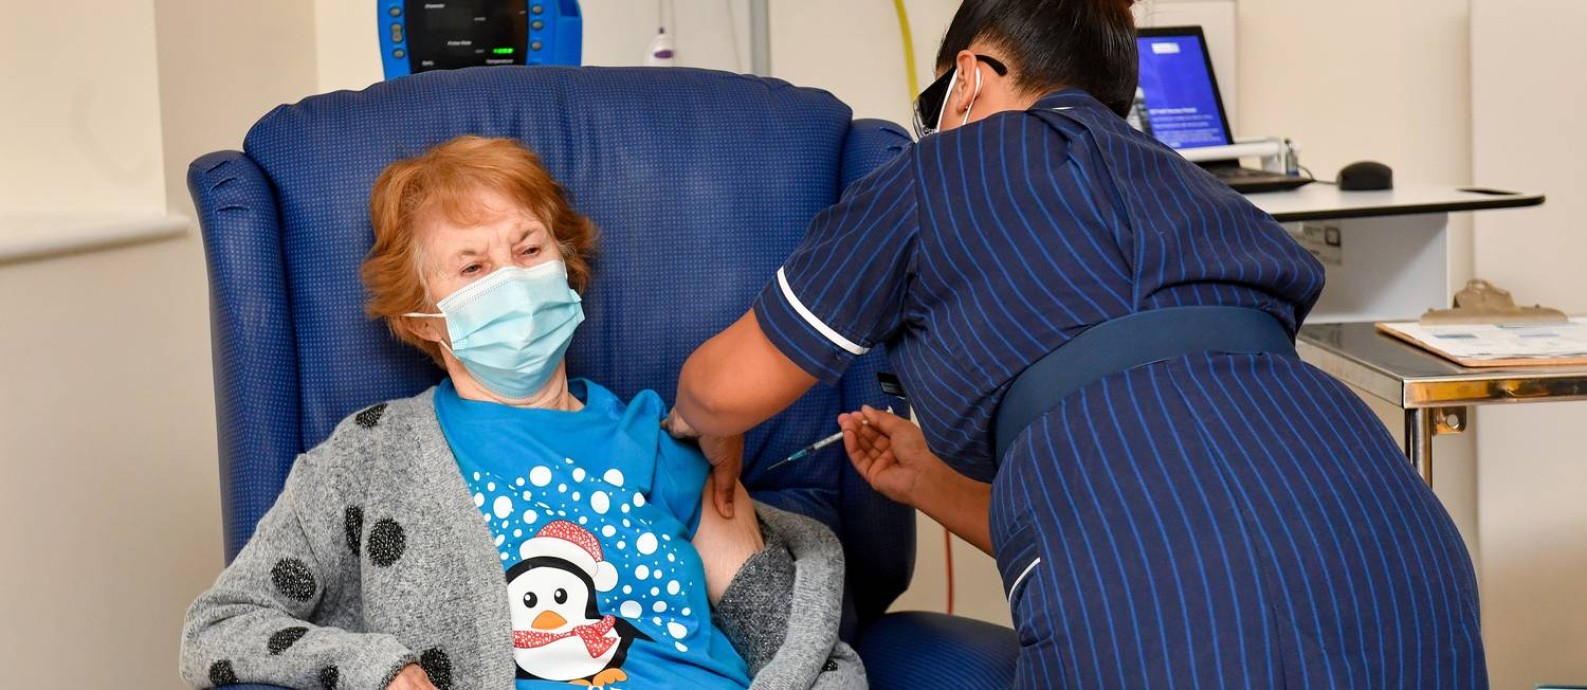 Margaret Keenan, uma avó britânica de 90 anos, tornou-se a primeira pessoa no mundo a receber a vacina da Pfizer contra a Covid-19, no início da campanha britânica de vacinação em massa Foto: Jacob King / REUTERS